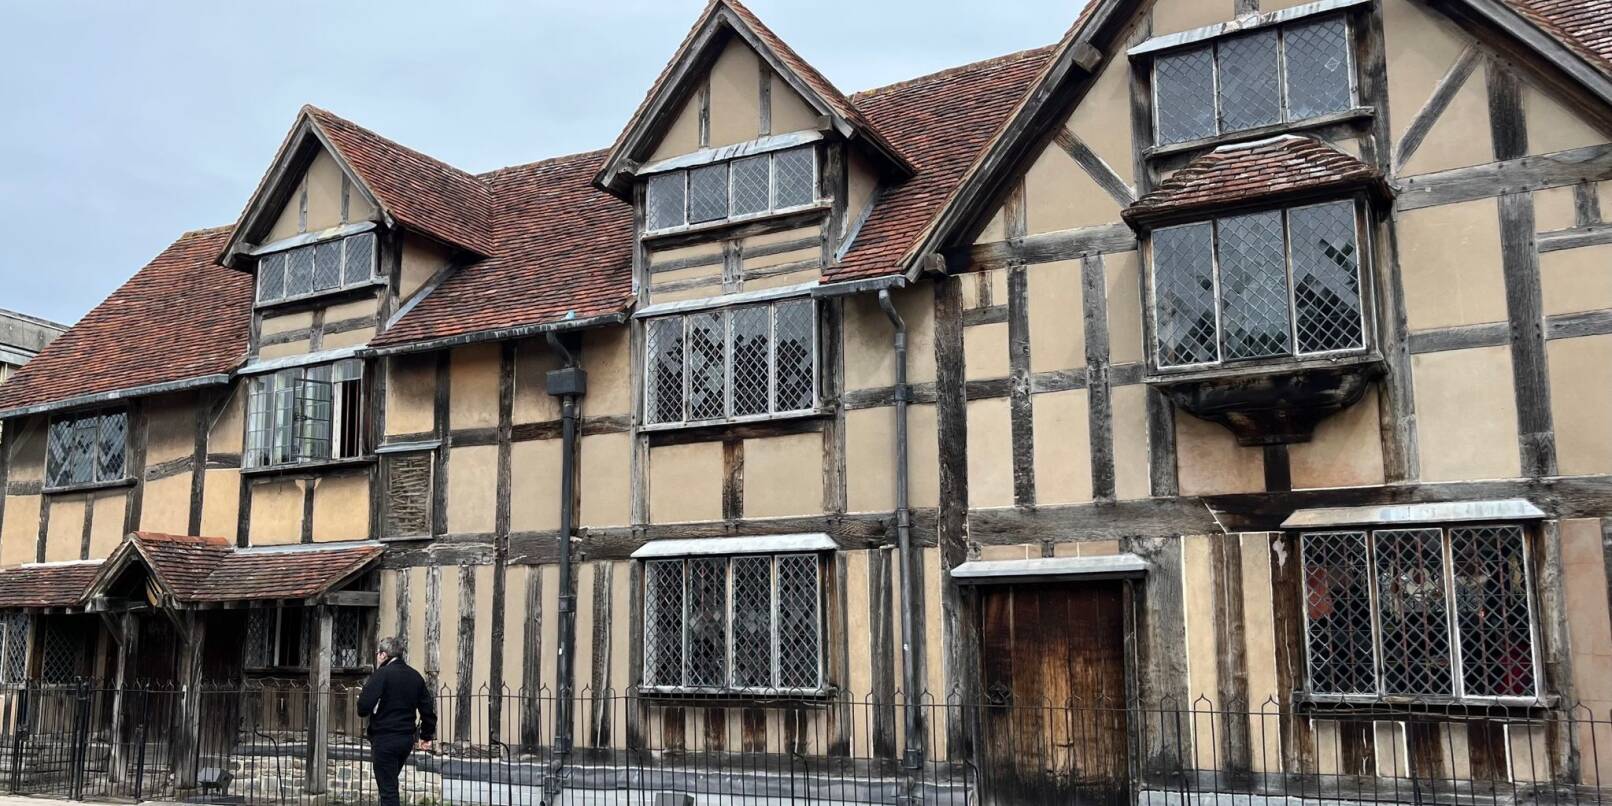 Das Geburtshaus von William Shakespeare in der englischen Stadt Stratford-upon-Avon.